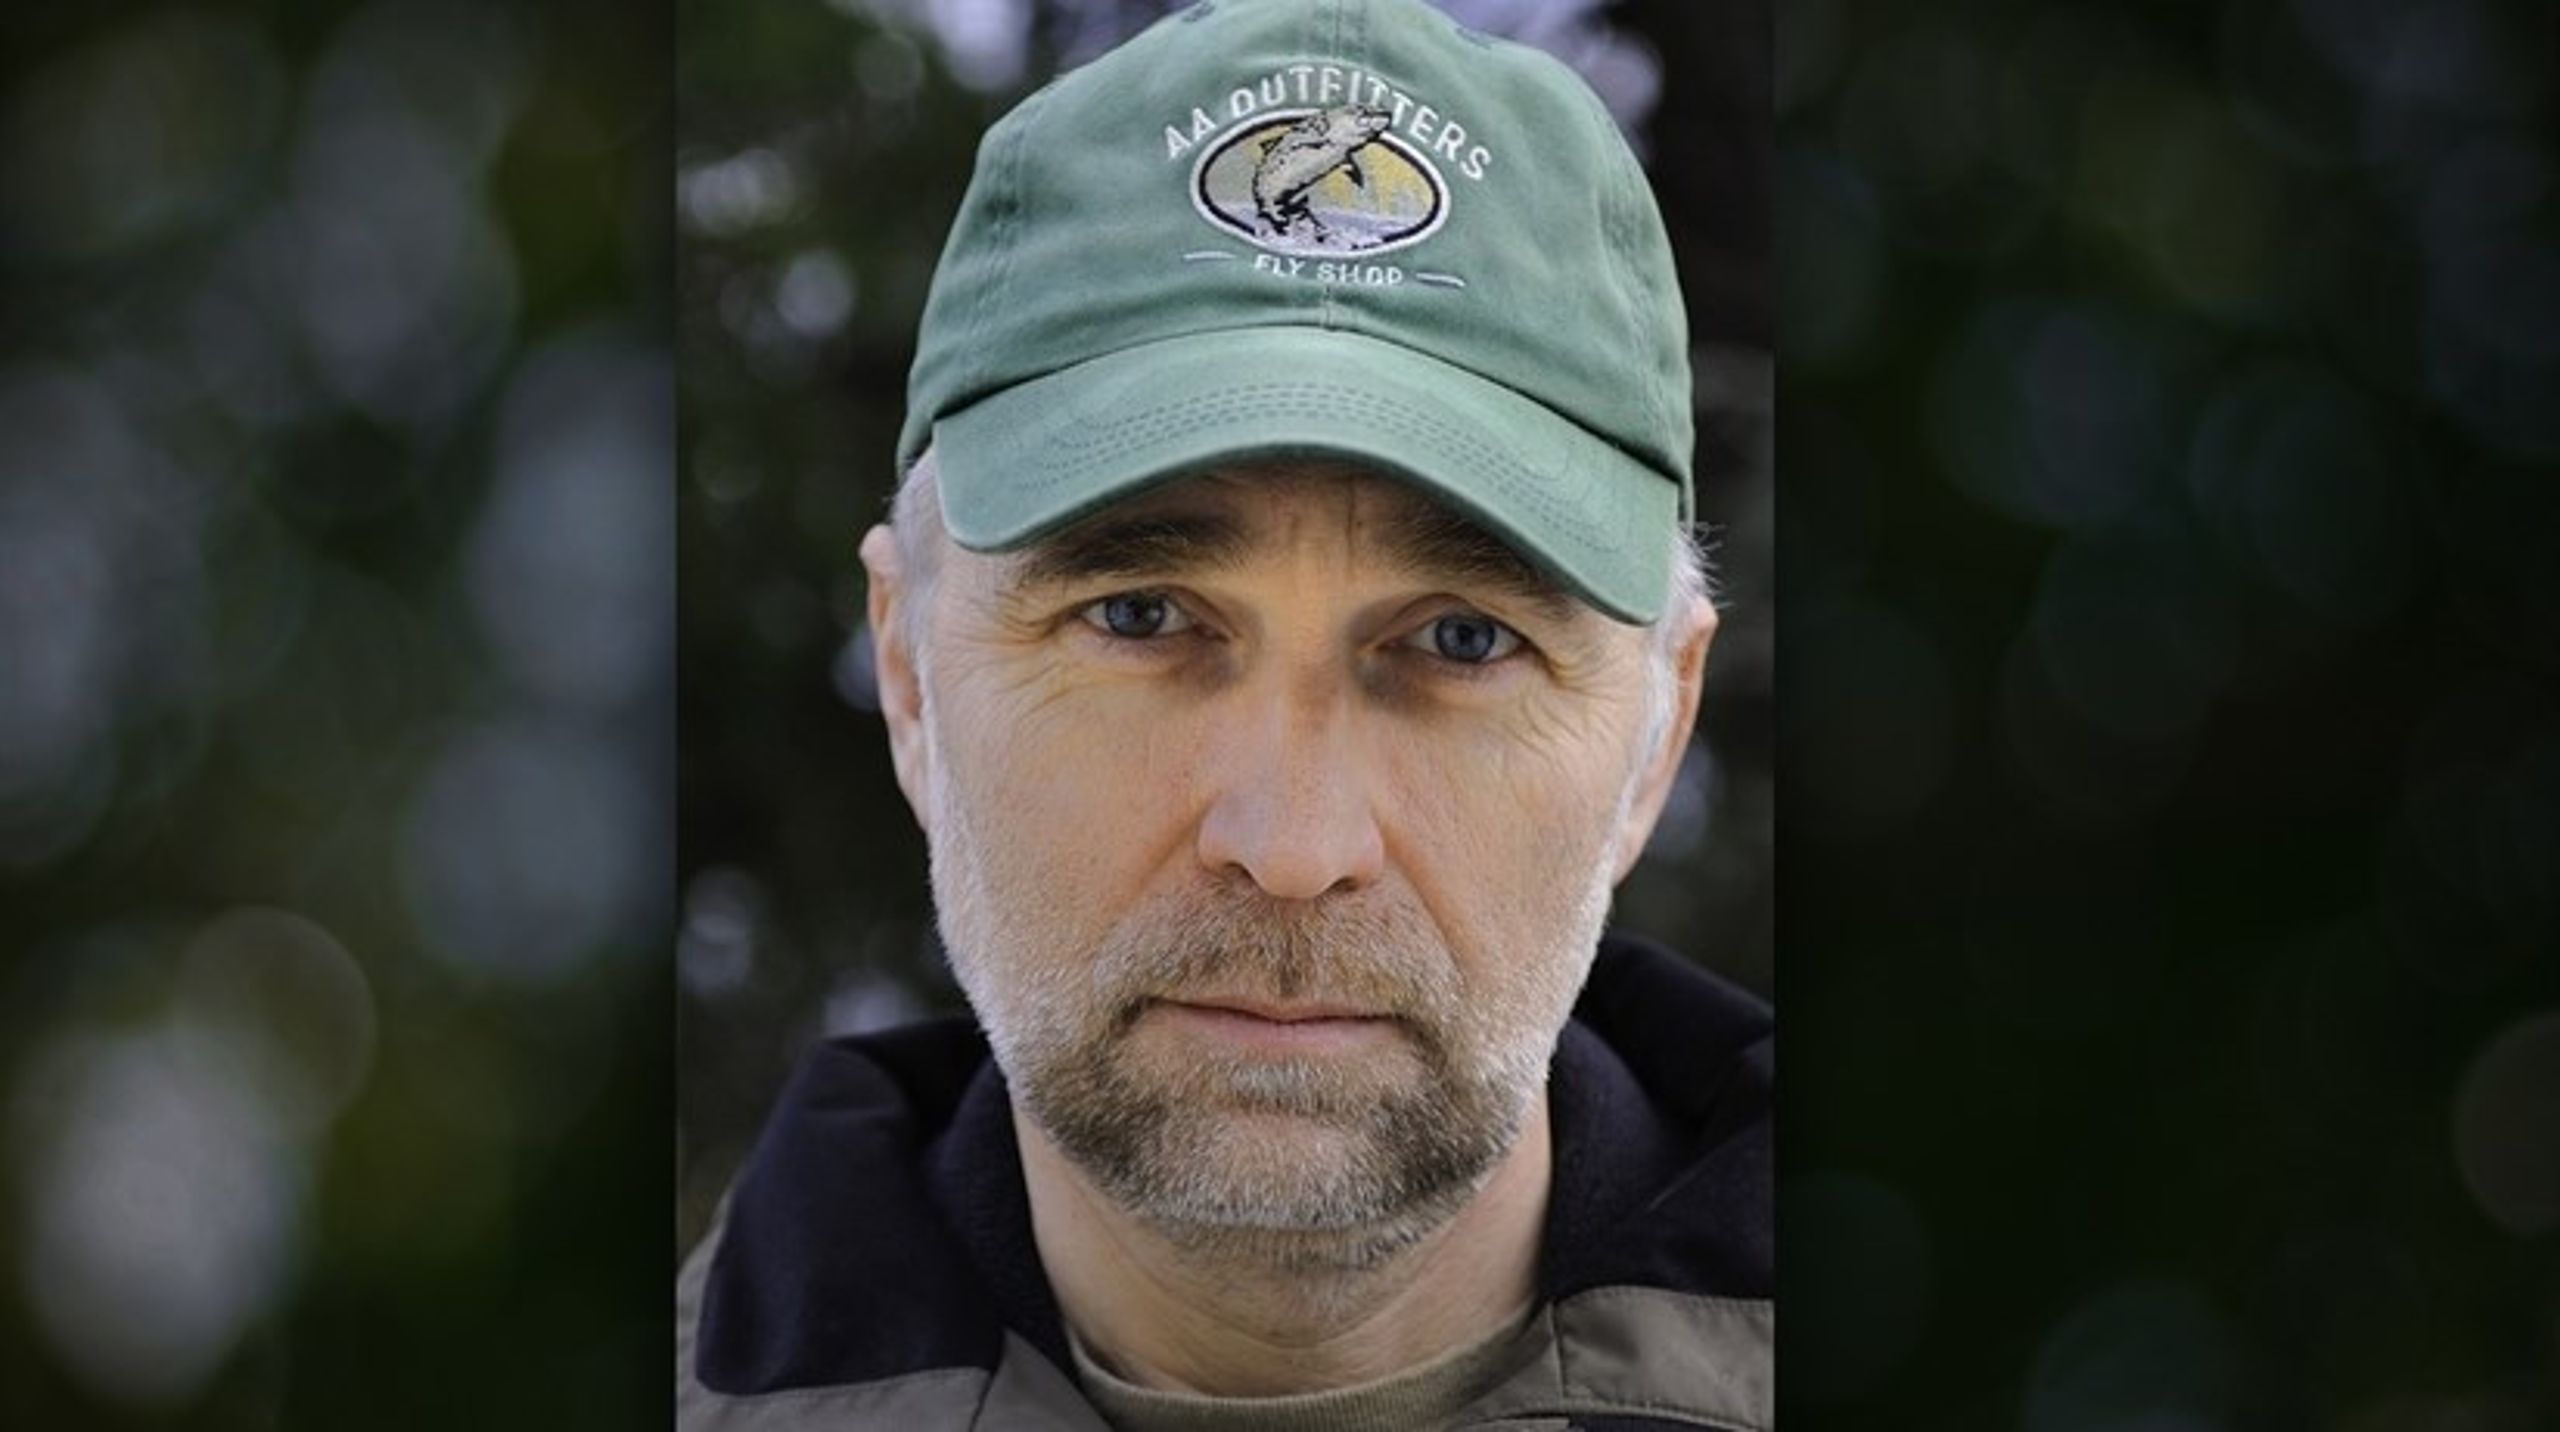 Skogforsker og samfunnsdebattant Ketil Skogen døde lørdag. Han har bidratt med å løfte debatten om skogvern, maktstrukturer og politikk gjennom rollen sin som forsker ved Norsk institutt for naturforskning.